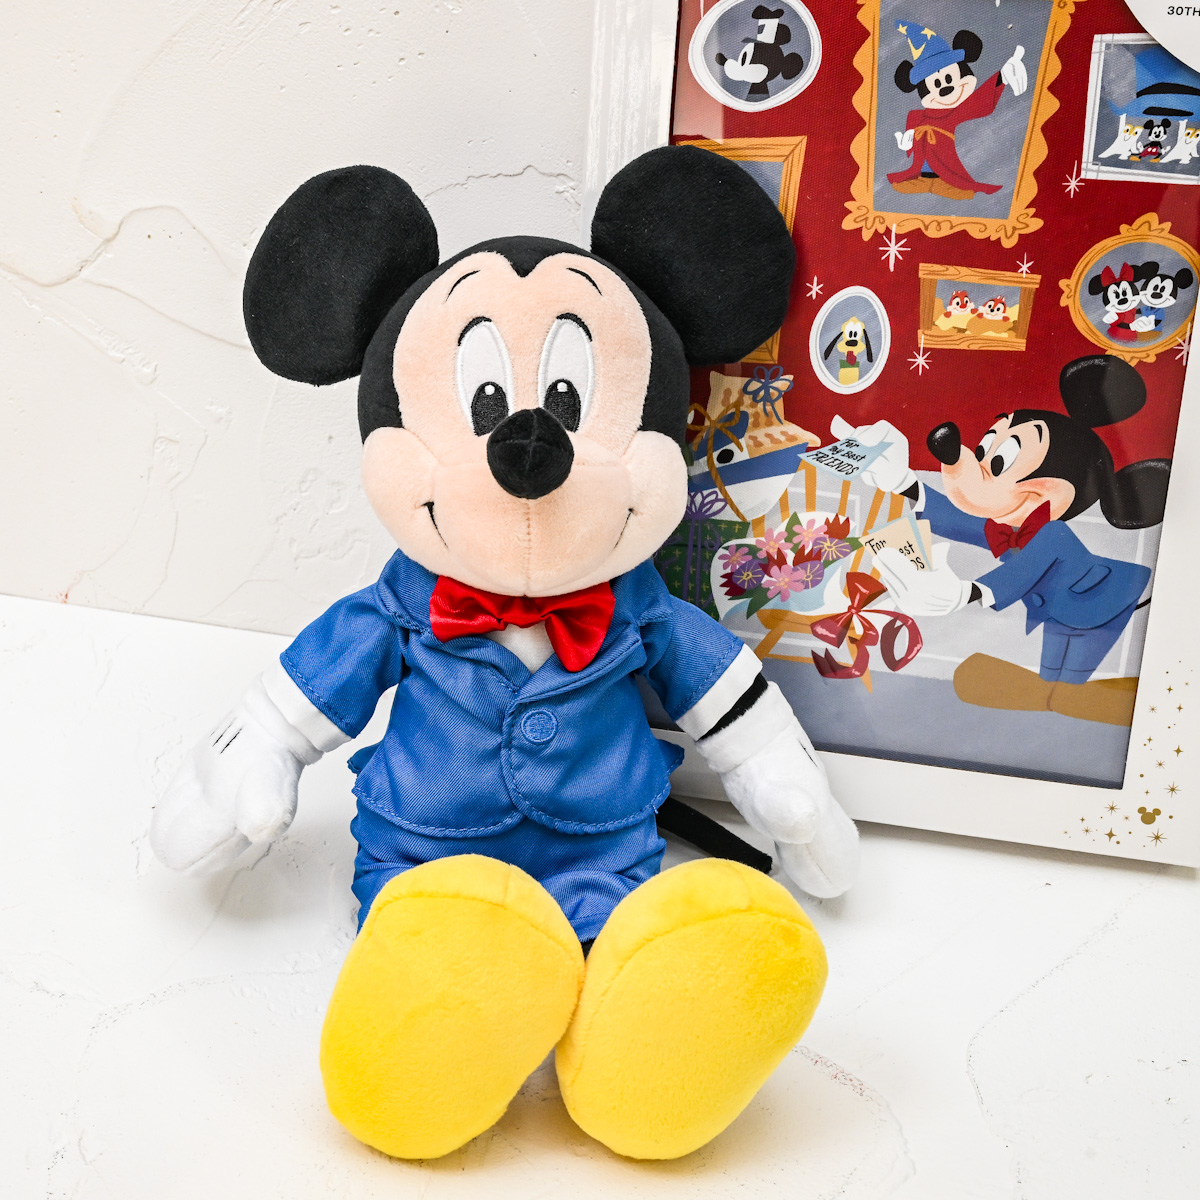 ミッキー ぬいぐるみ Disney Store Japan 30th Anniversary